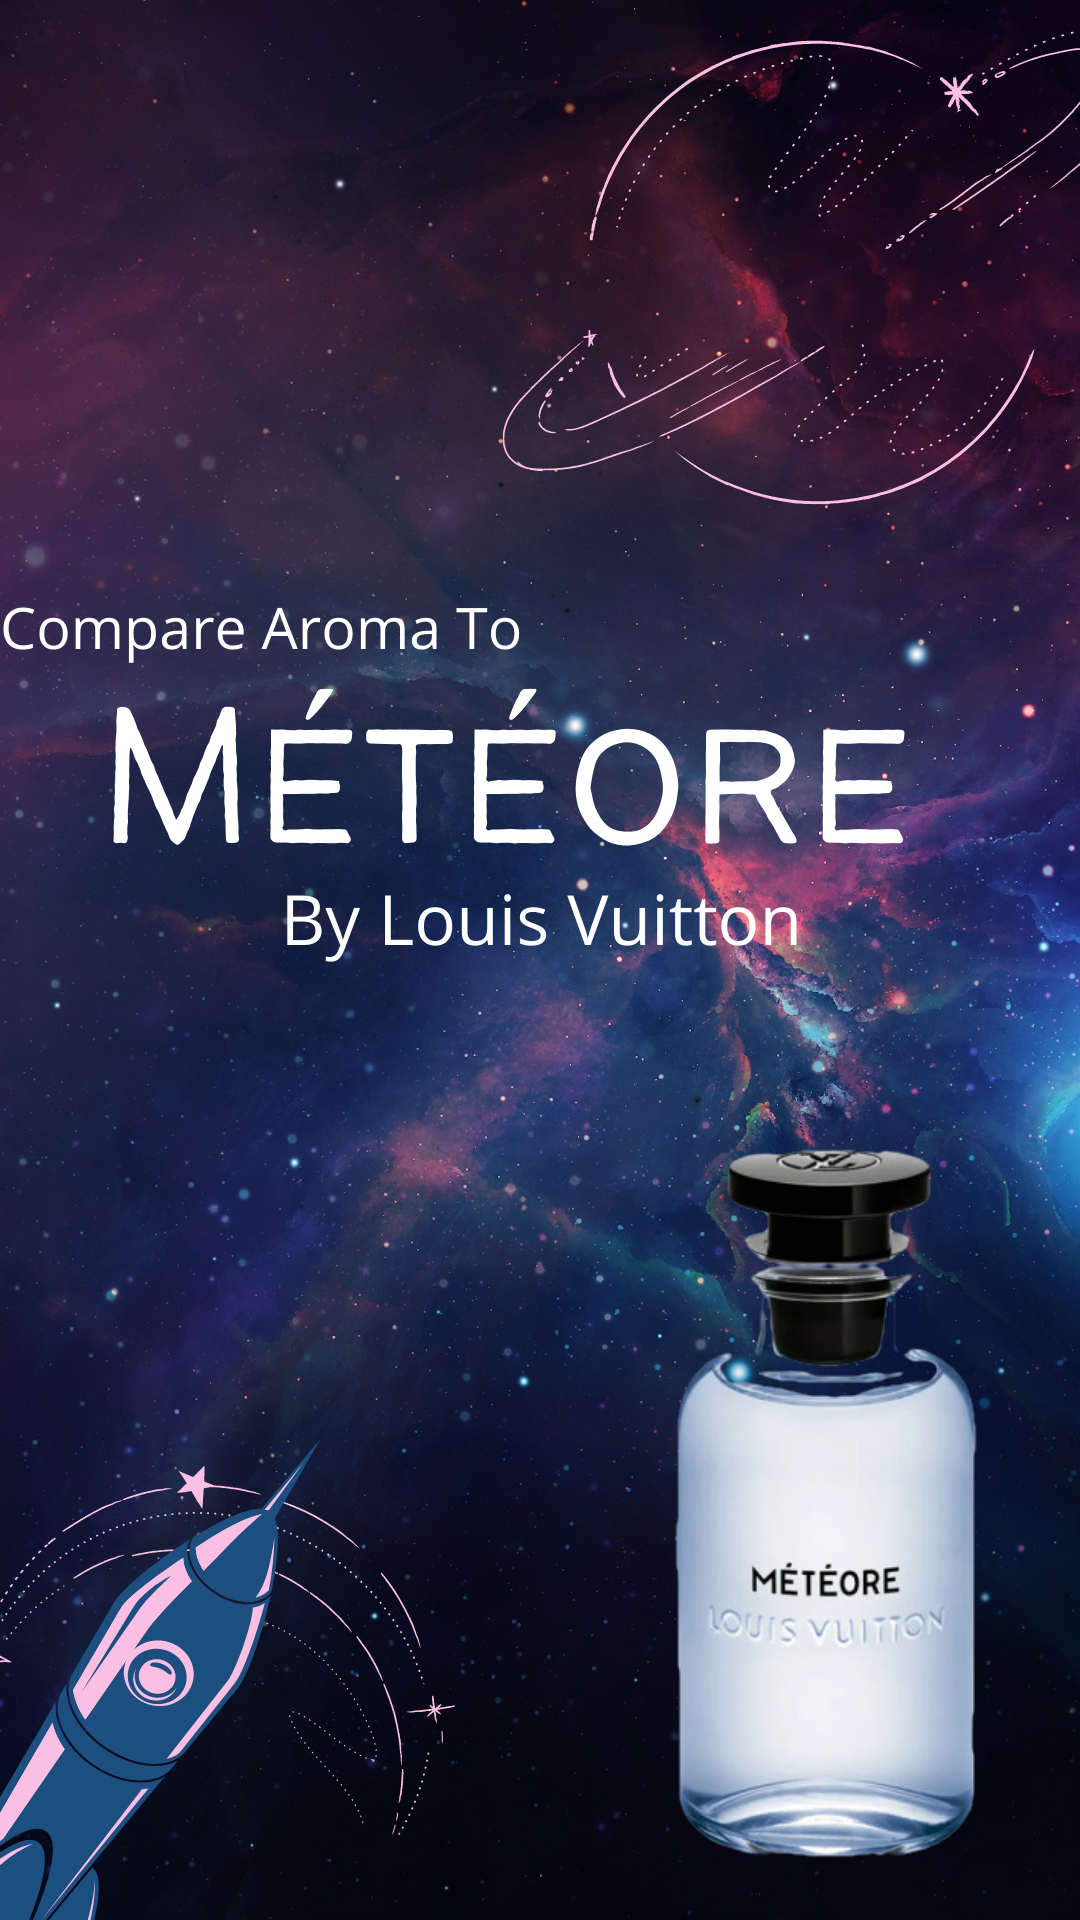 Compare Aroma Météore